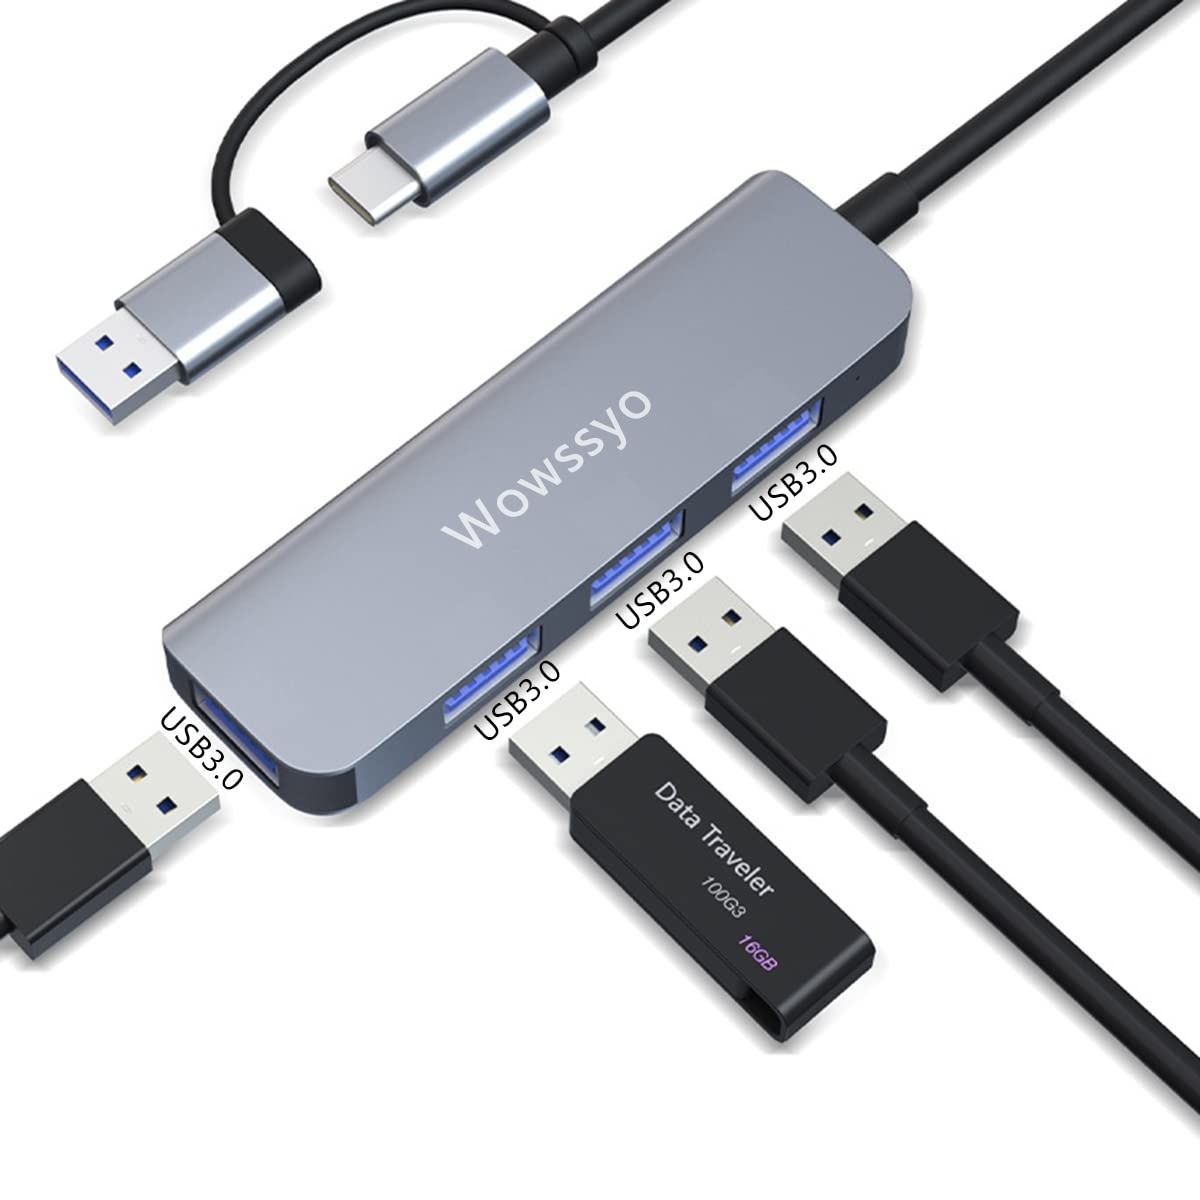 Wowssyo 4-Port USB 3.0 Hub, Ultra Slim Portable USB Daten Hub, USB Splitter für MacBook, Mac Pro, Mac Mini, IMac, Surface Pro, Laptop, PC, Flash Drive, Mobile HDD